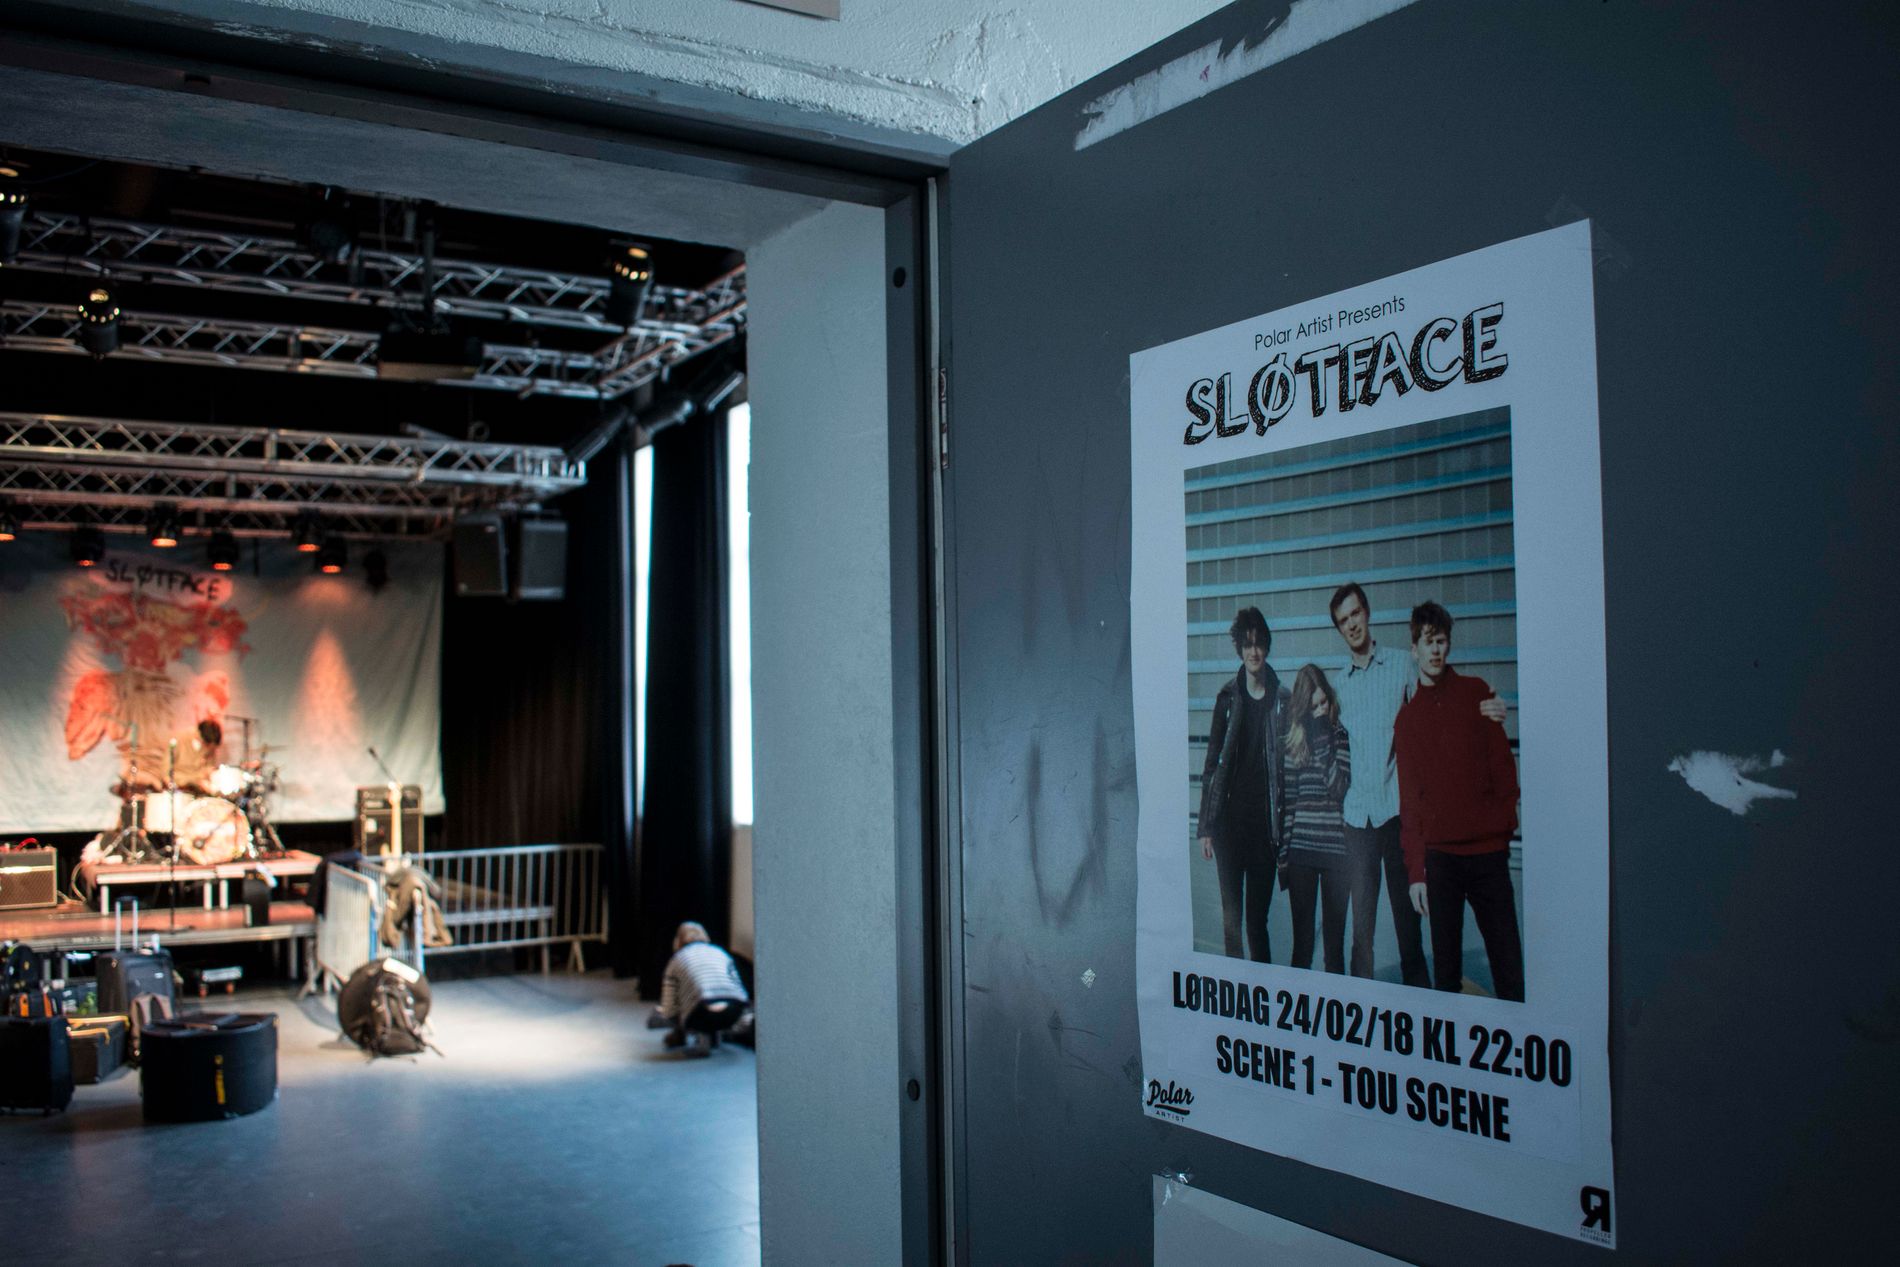 I fjor var Sløtface knapt innom Norge. I år har de egen norgesturné, og håper å bygge opp et større publikum i hjemlandet.